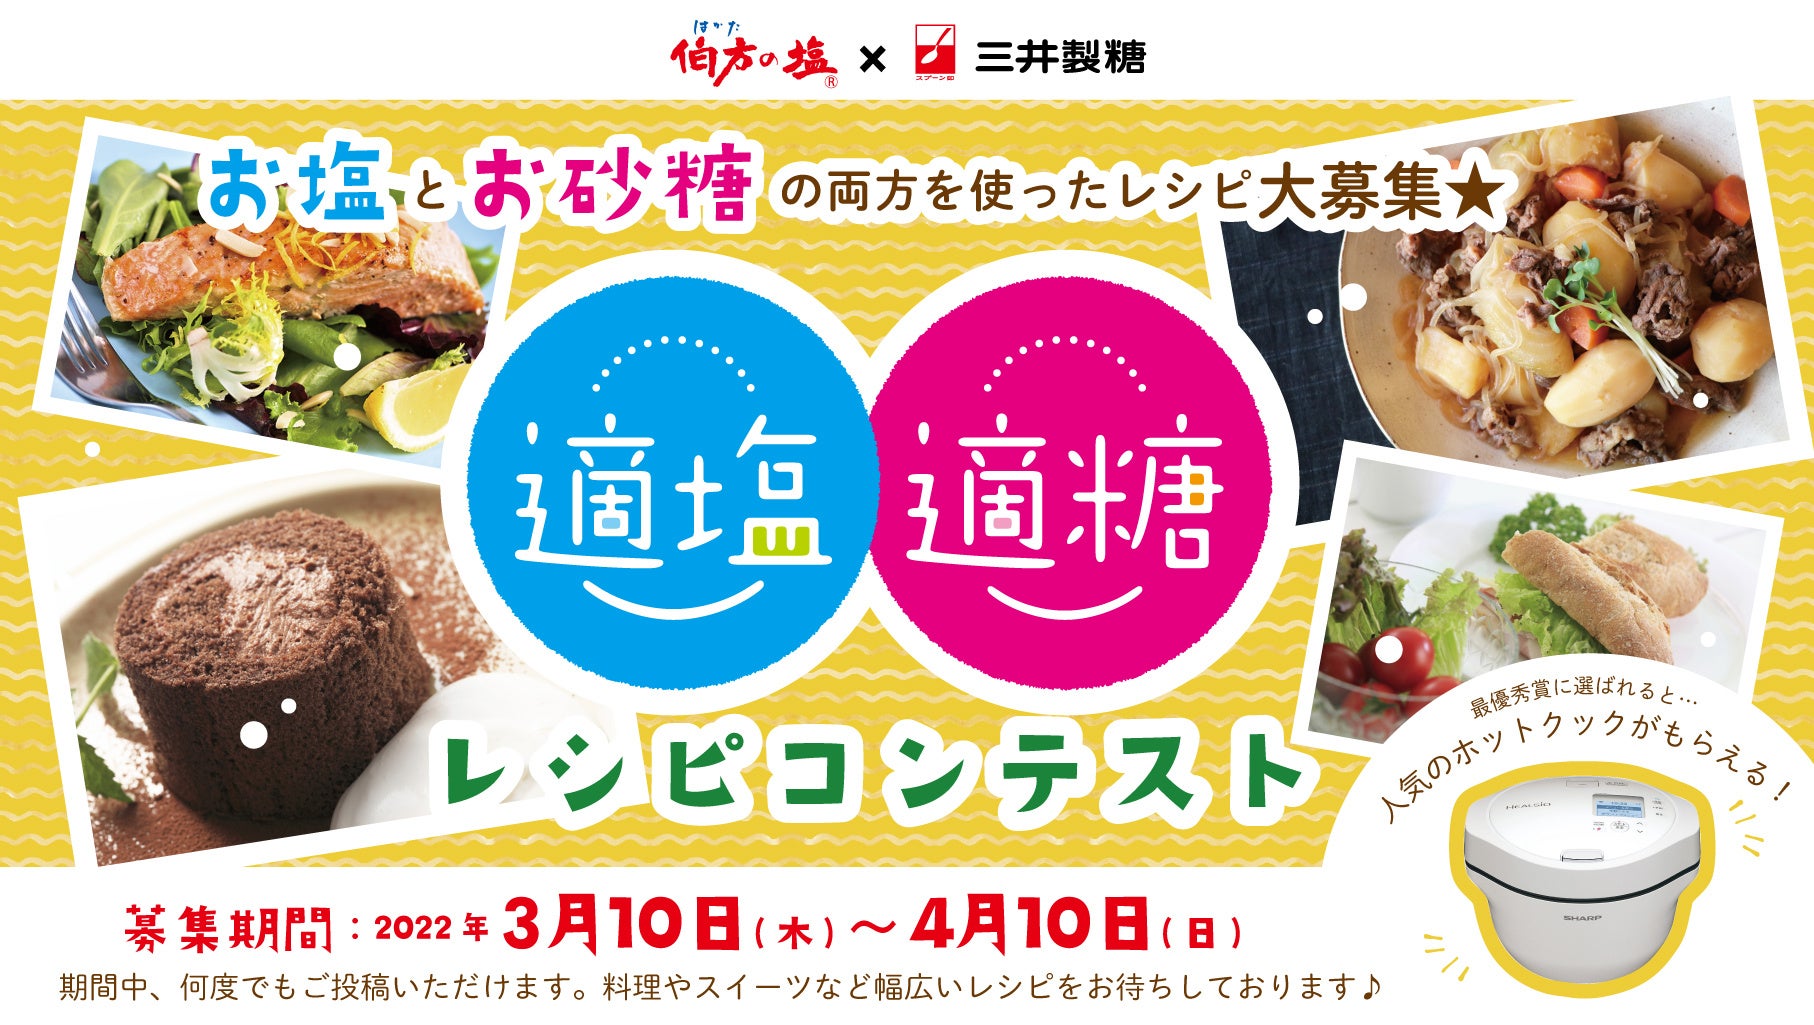 うずらの卵専門店「う玉屋」幻の高級うずらの卵「極」3/18(金)発売